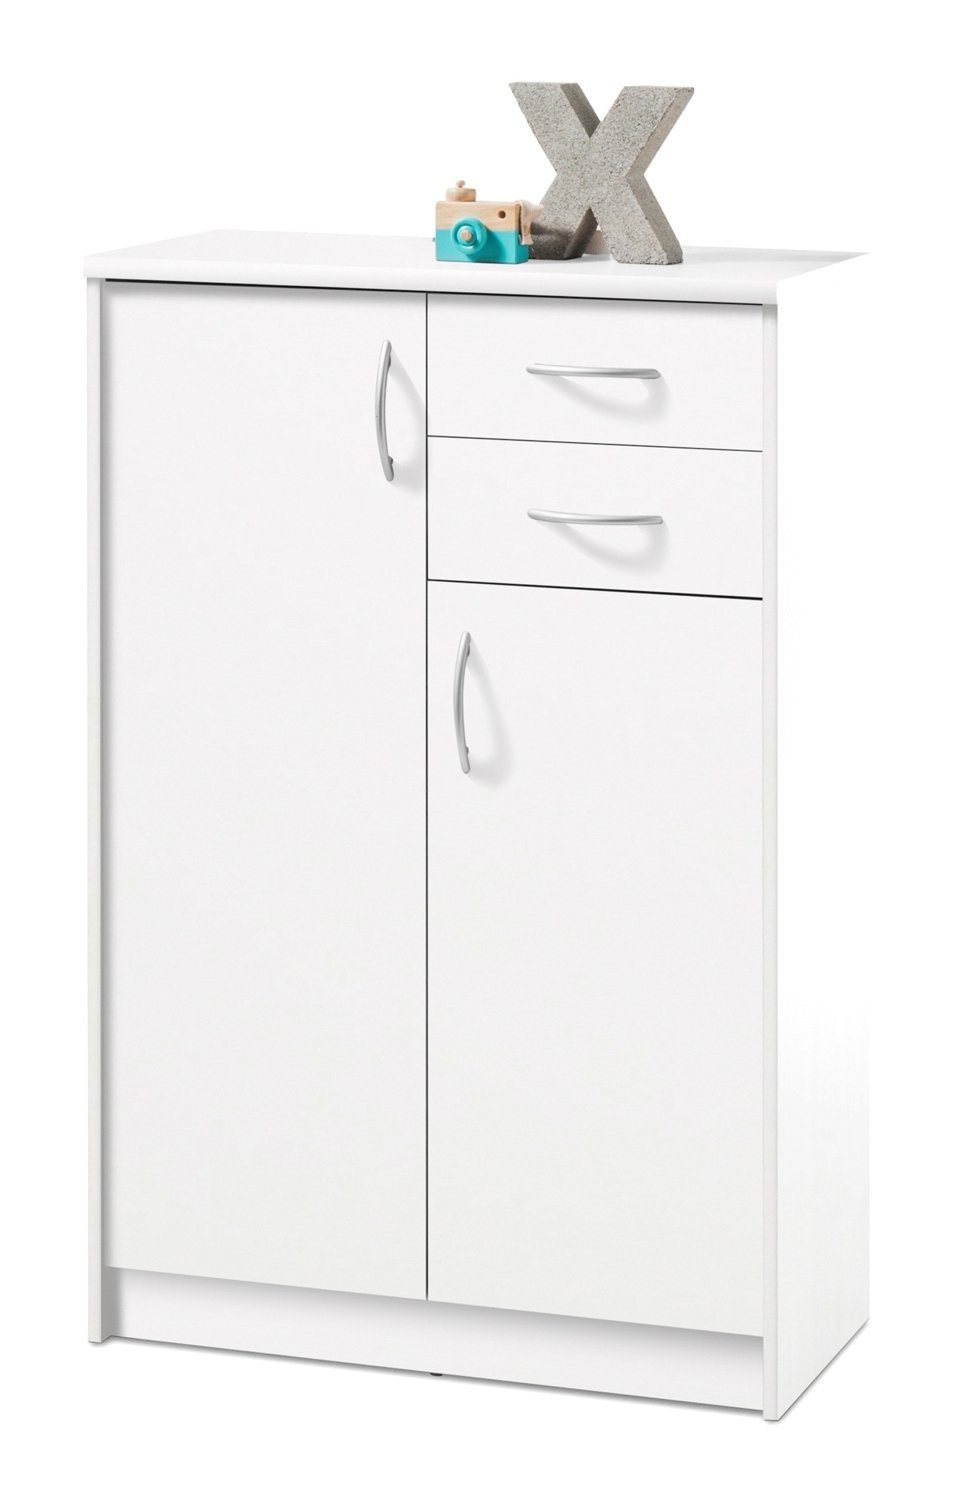 Kommode OPTIMUS, Weiß matt, 2 Türen, 2 Schubladen, B 74 x H 112 x T 35 cm